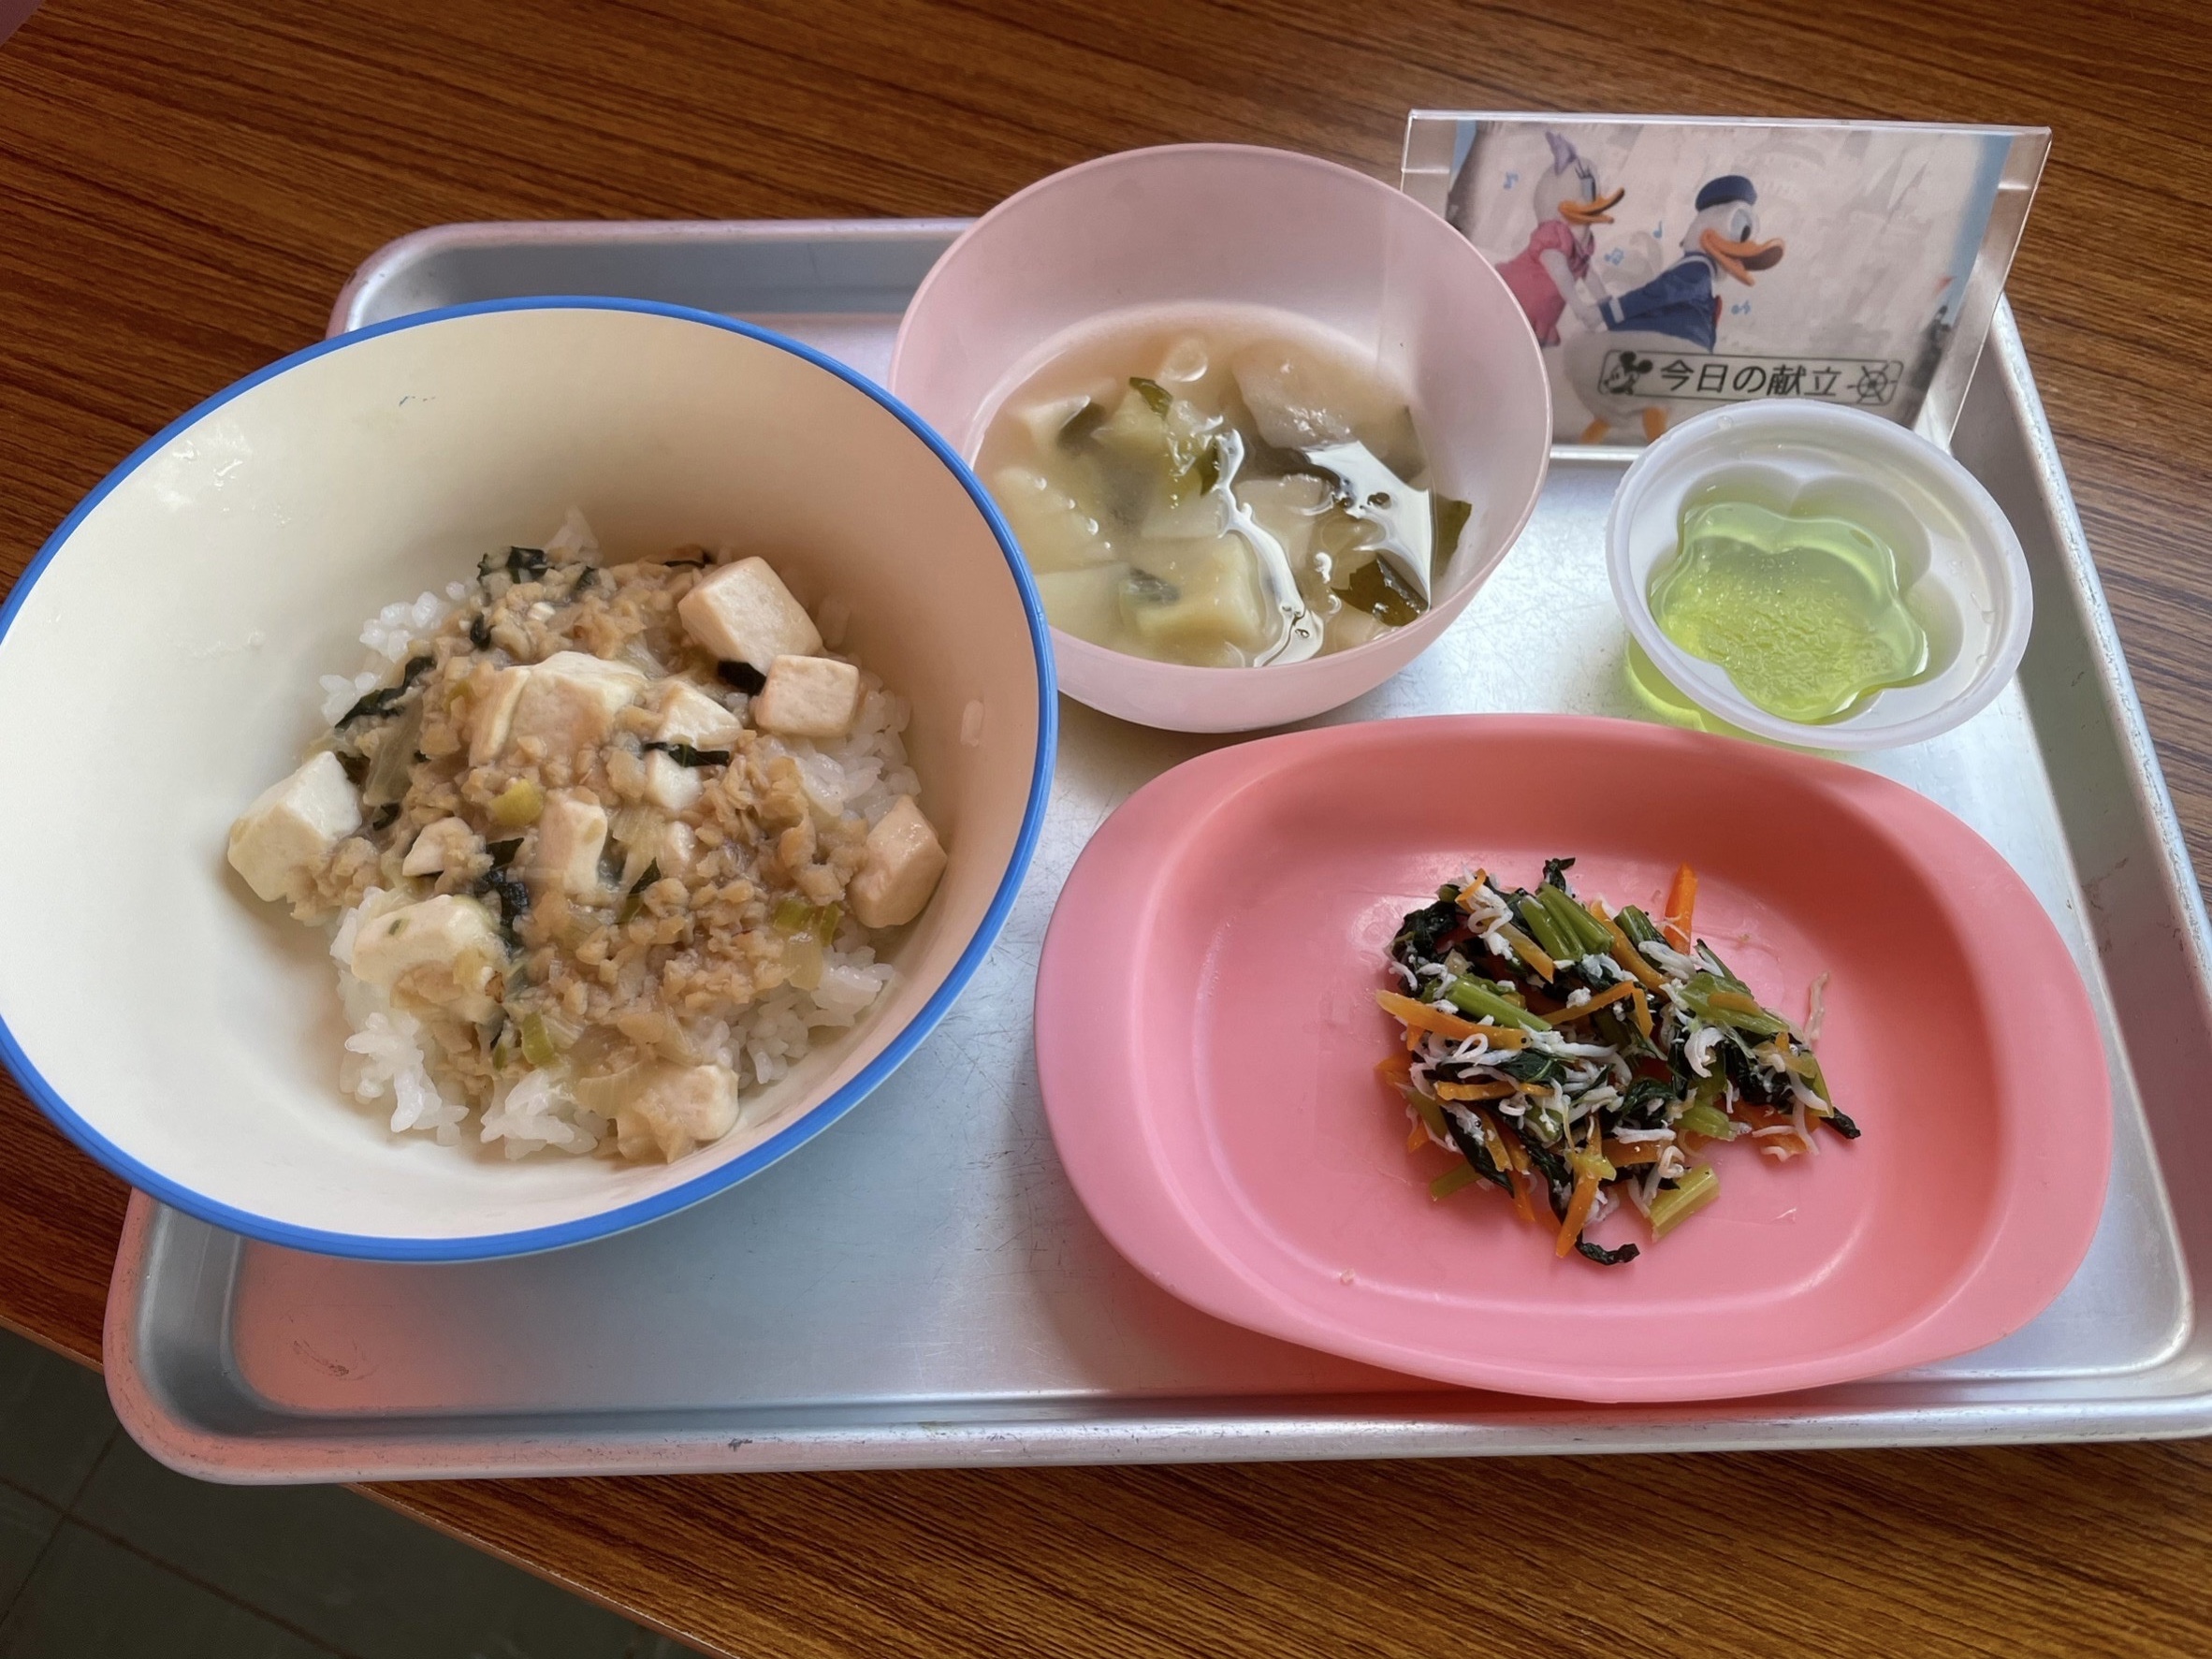 マーボー豆腐丼、小松菜と人参のしらすサラダ、じゃがいもの味噌汁、青りんごゼリー